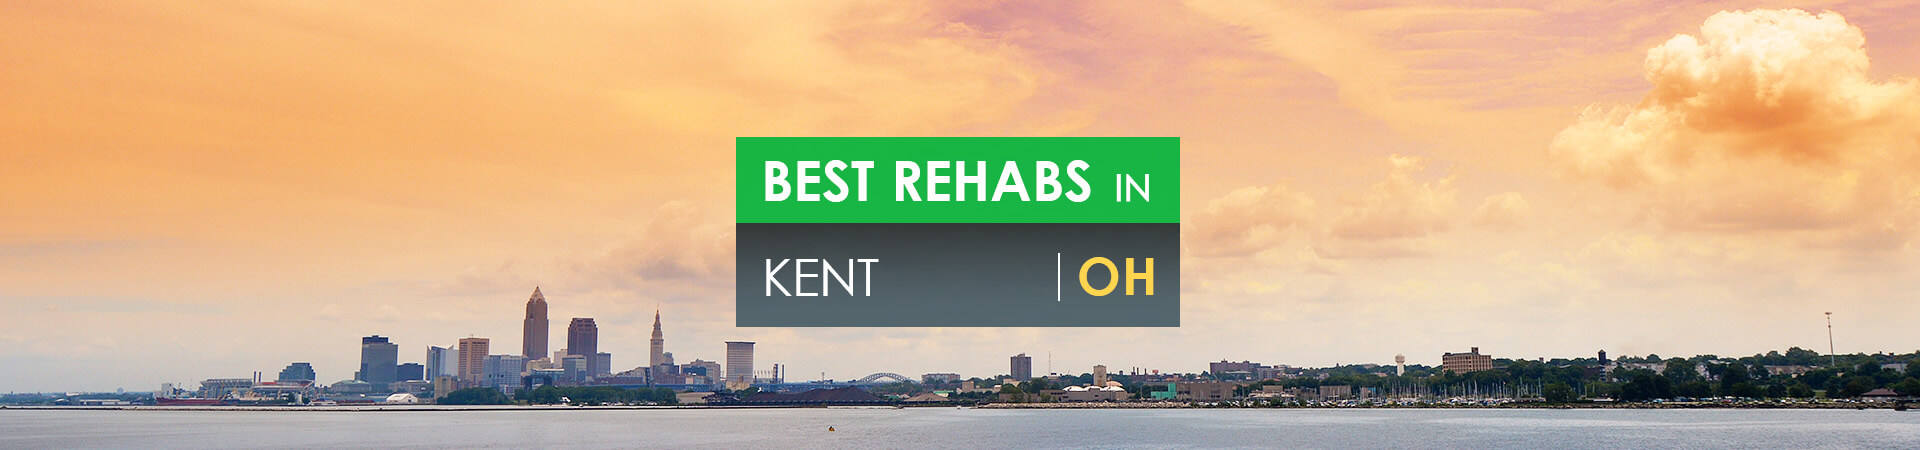 Best rehabs in Kent, OH